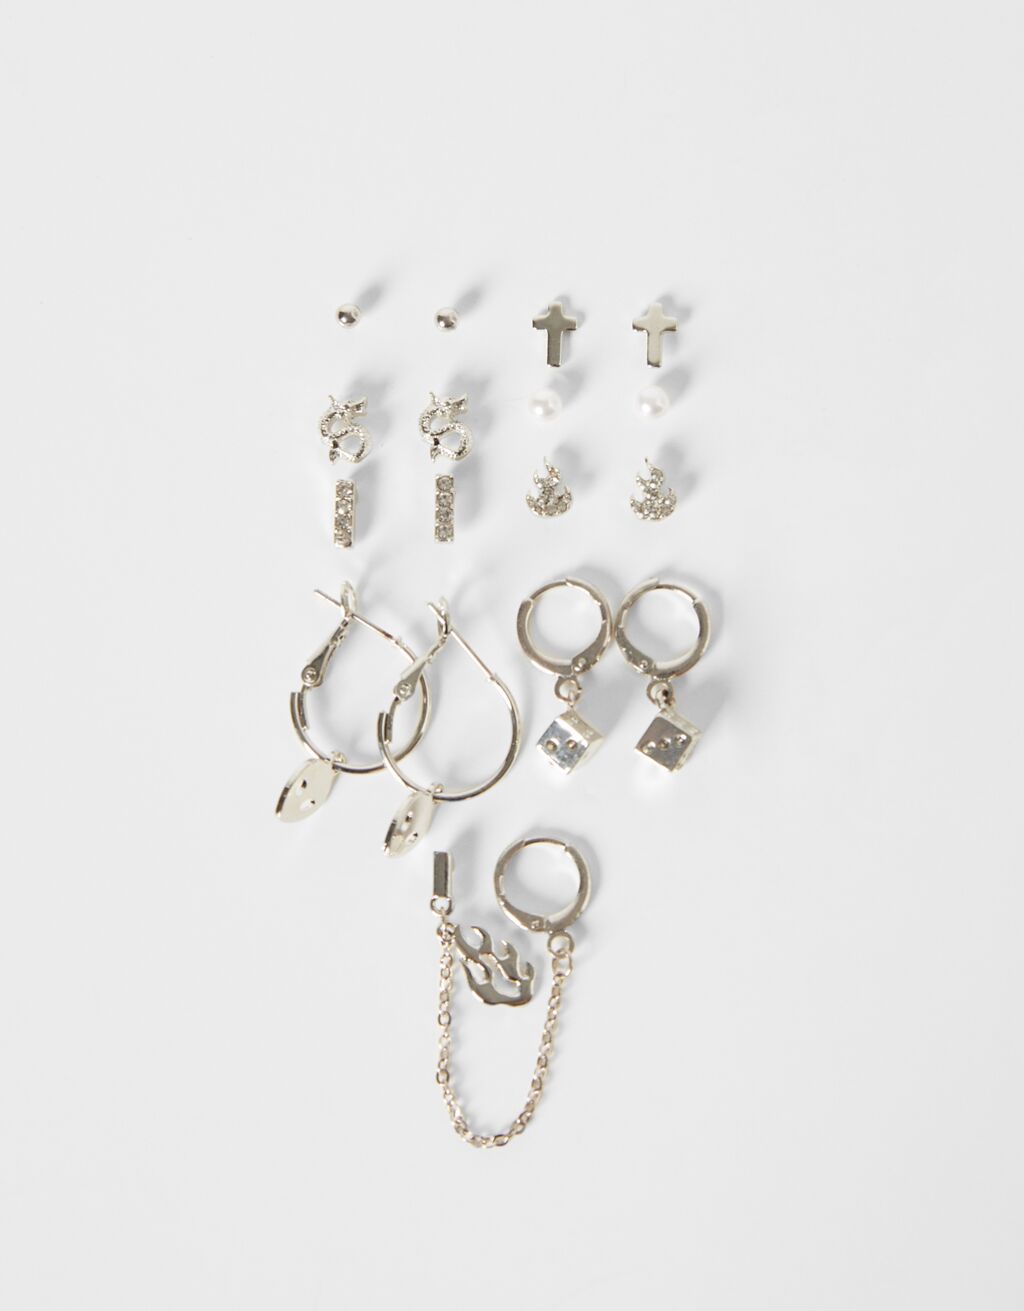 Set of 9 cross earrings